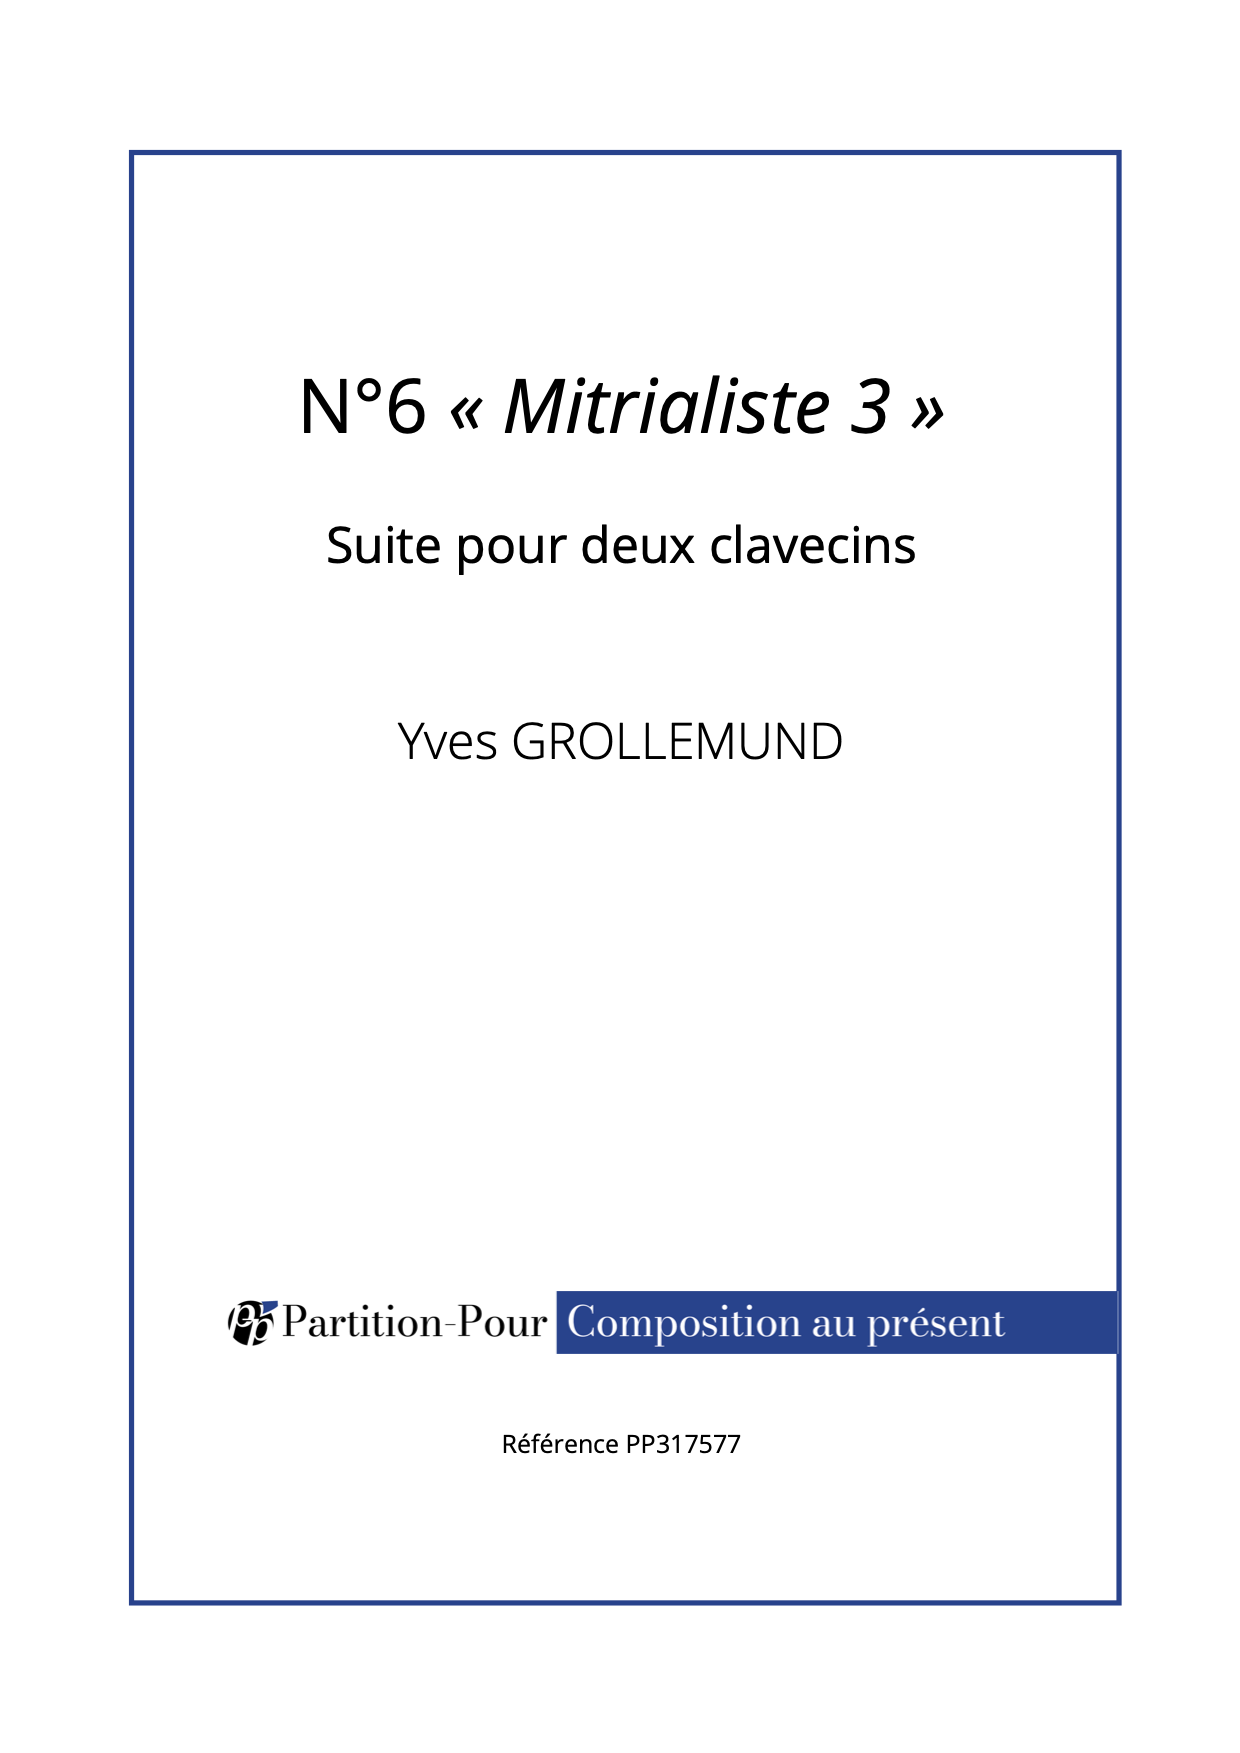 PP317577 - Grollemund Y - Suite pour 2 clavecins - N°6 « Mitrialiste 3 » - 2 clavecins -présentation